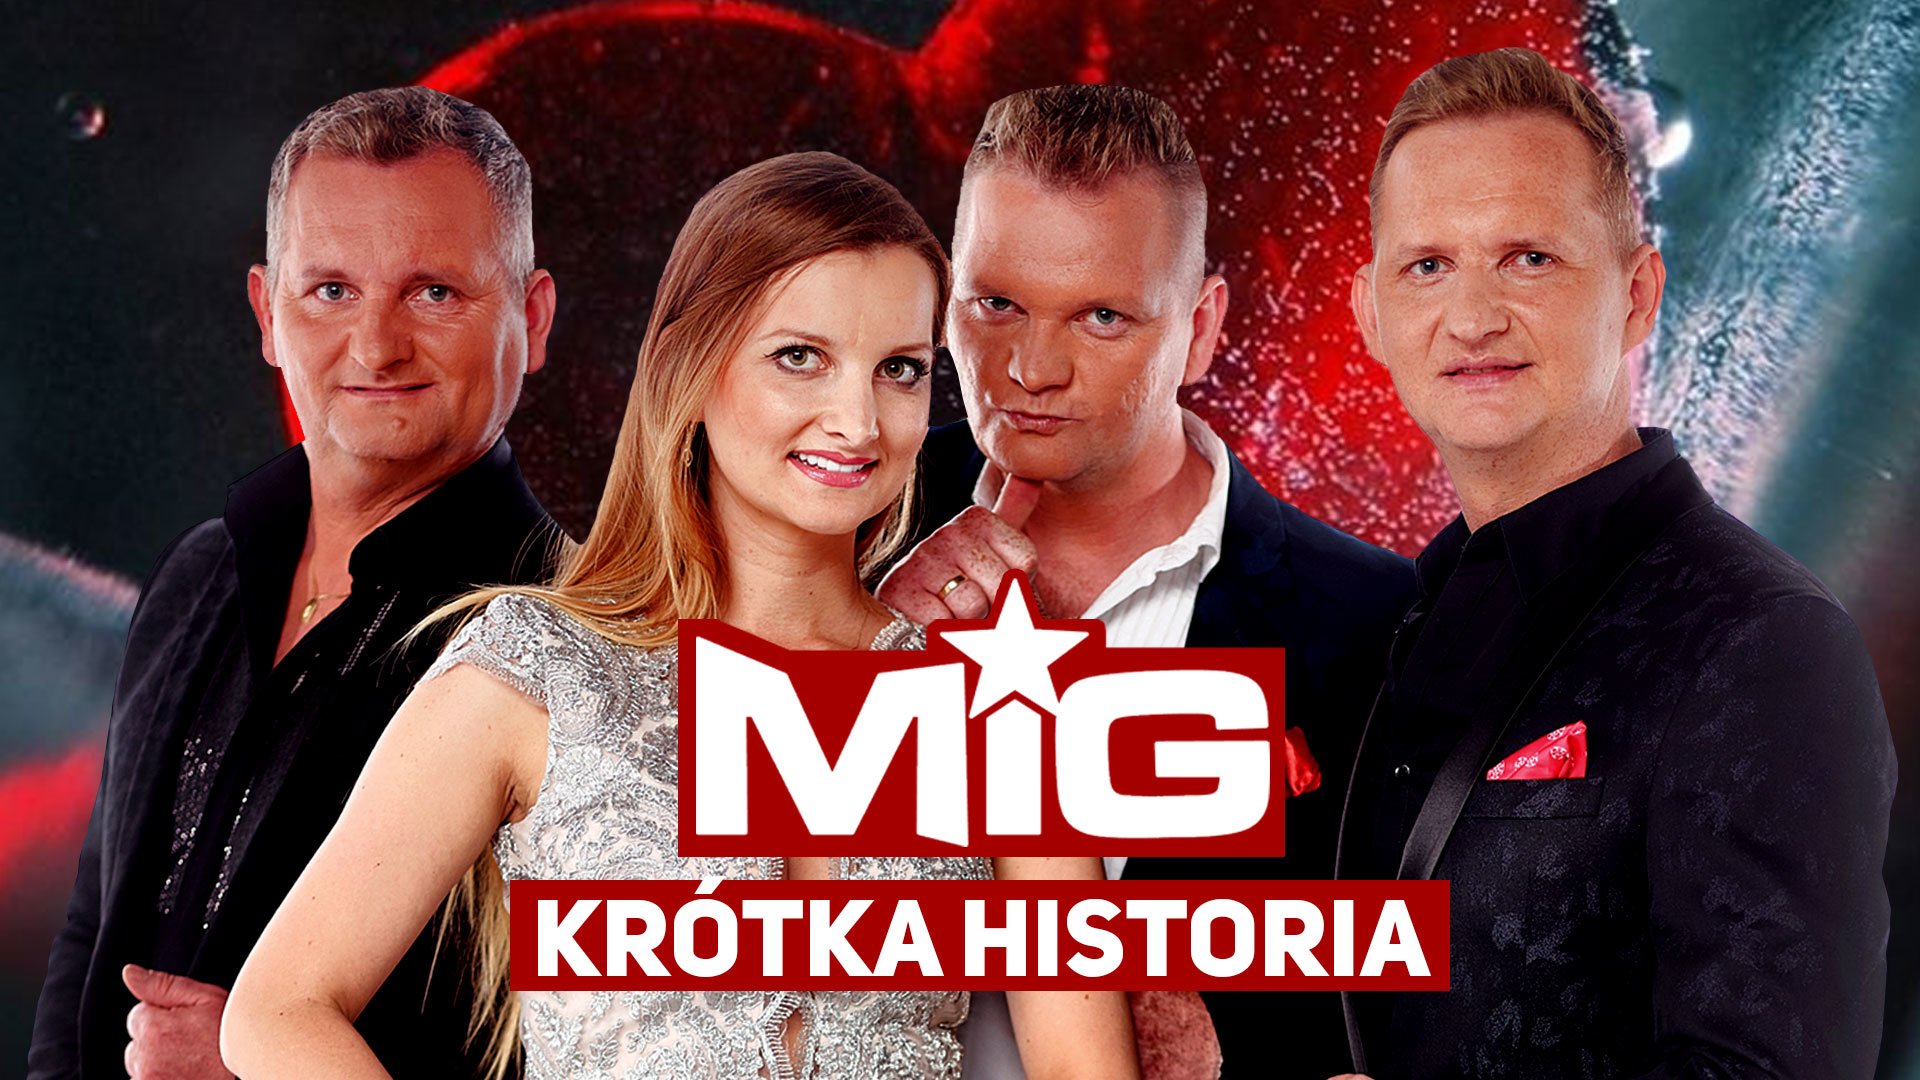 Mig - Krótka Historia | Gorąca premiera, która podbije rynek disco polo?!